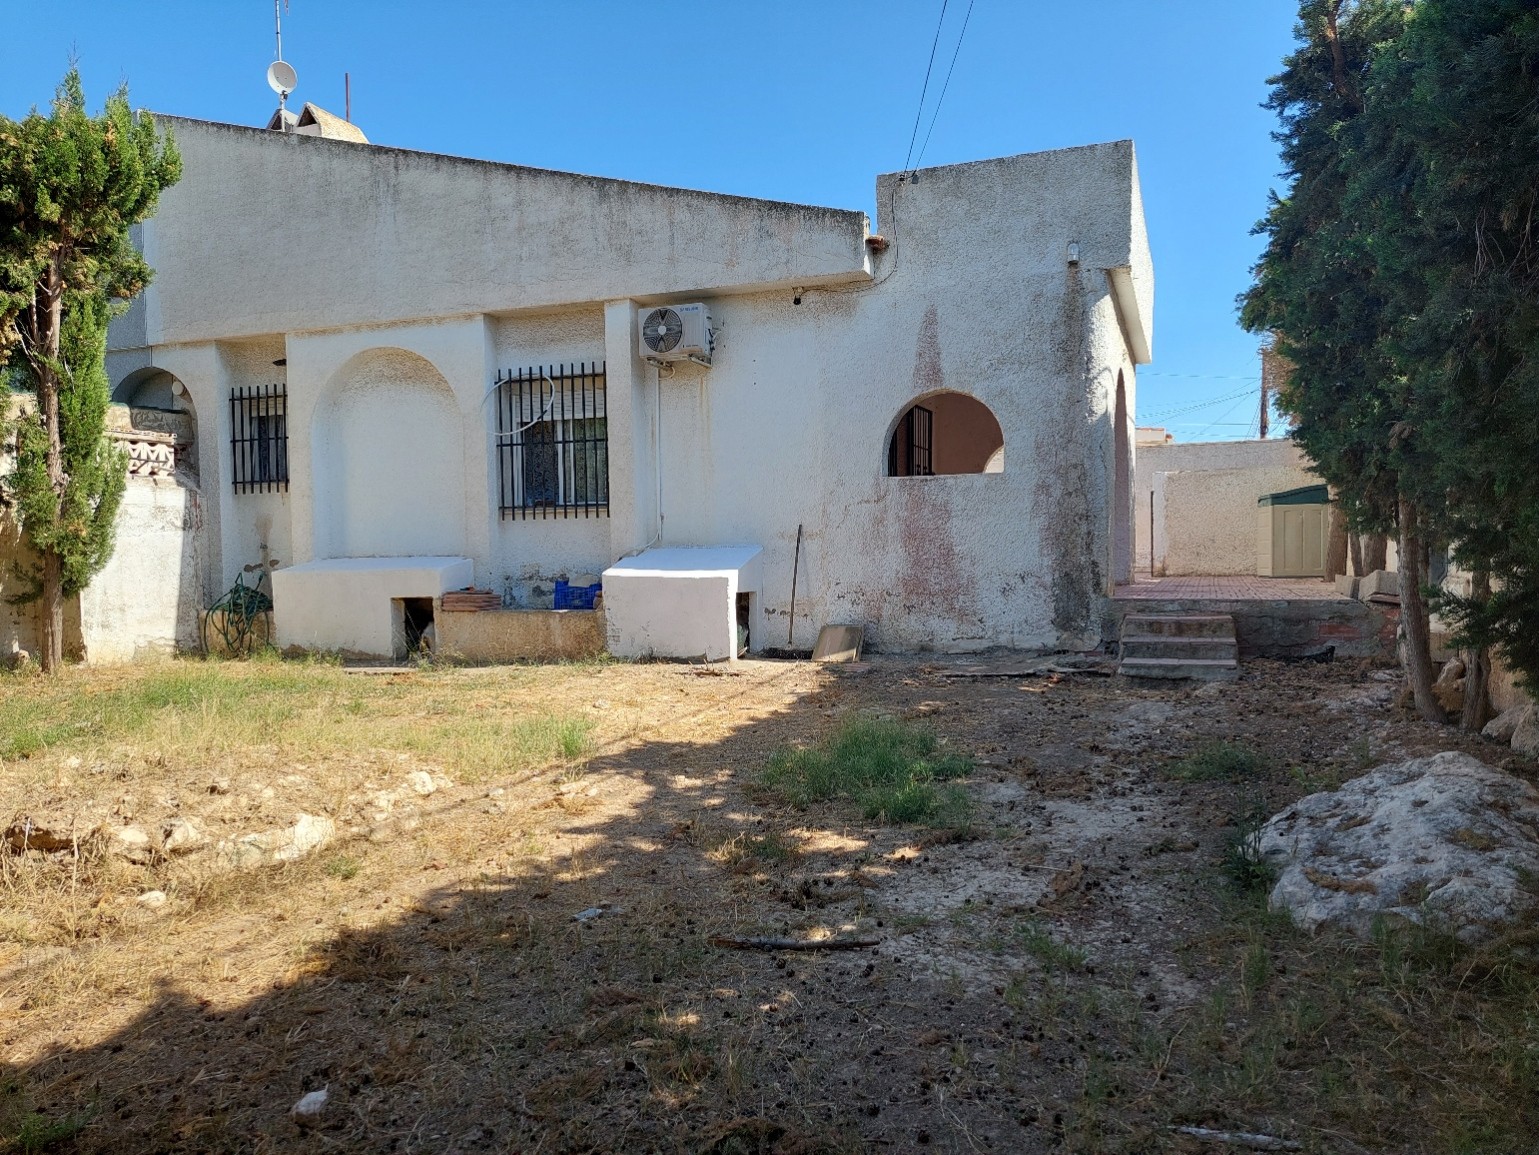 For sale: 2 bedroom bungalow in Torrevieja, Costa Blanca